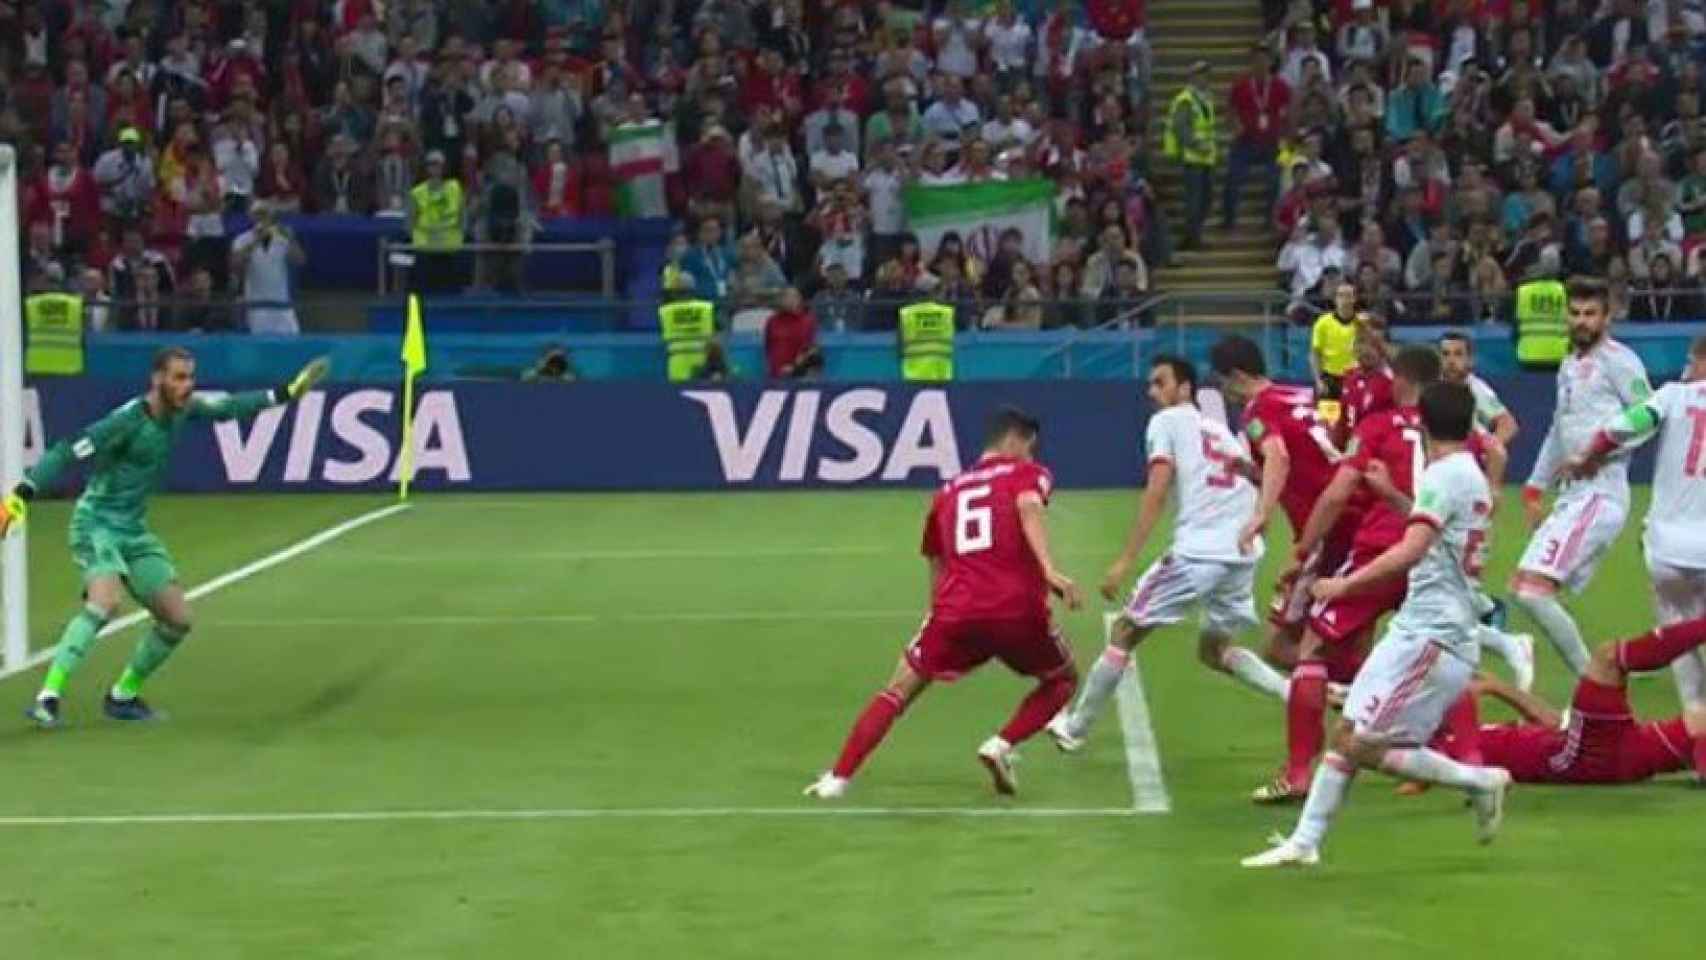 Fuera de juego de Irán y gol anulado. Foto Twitter (@elchiringuitotv)